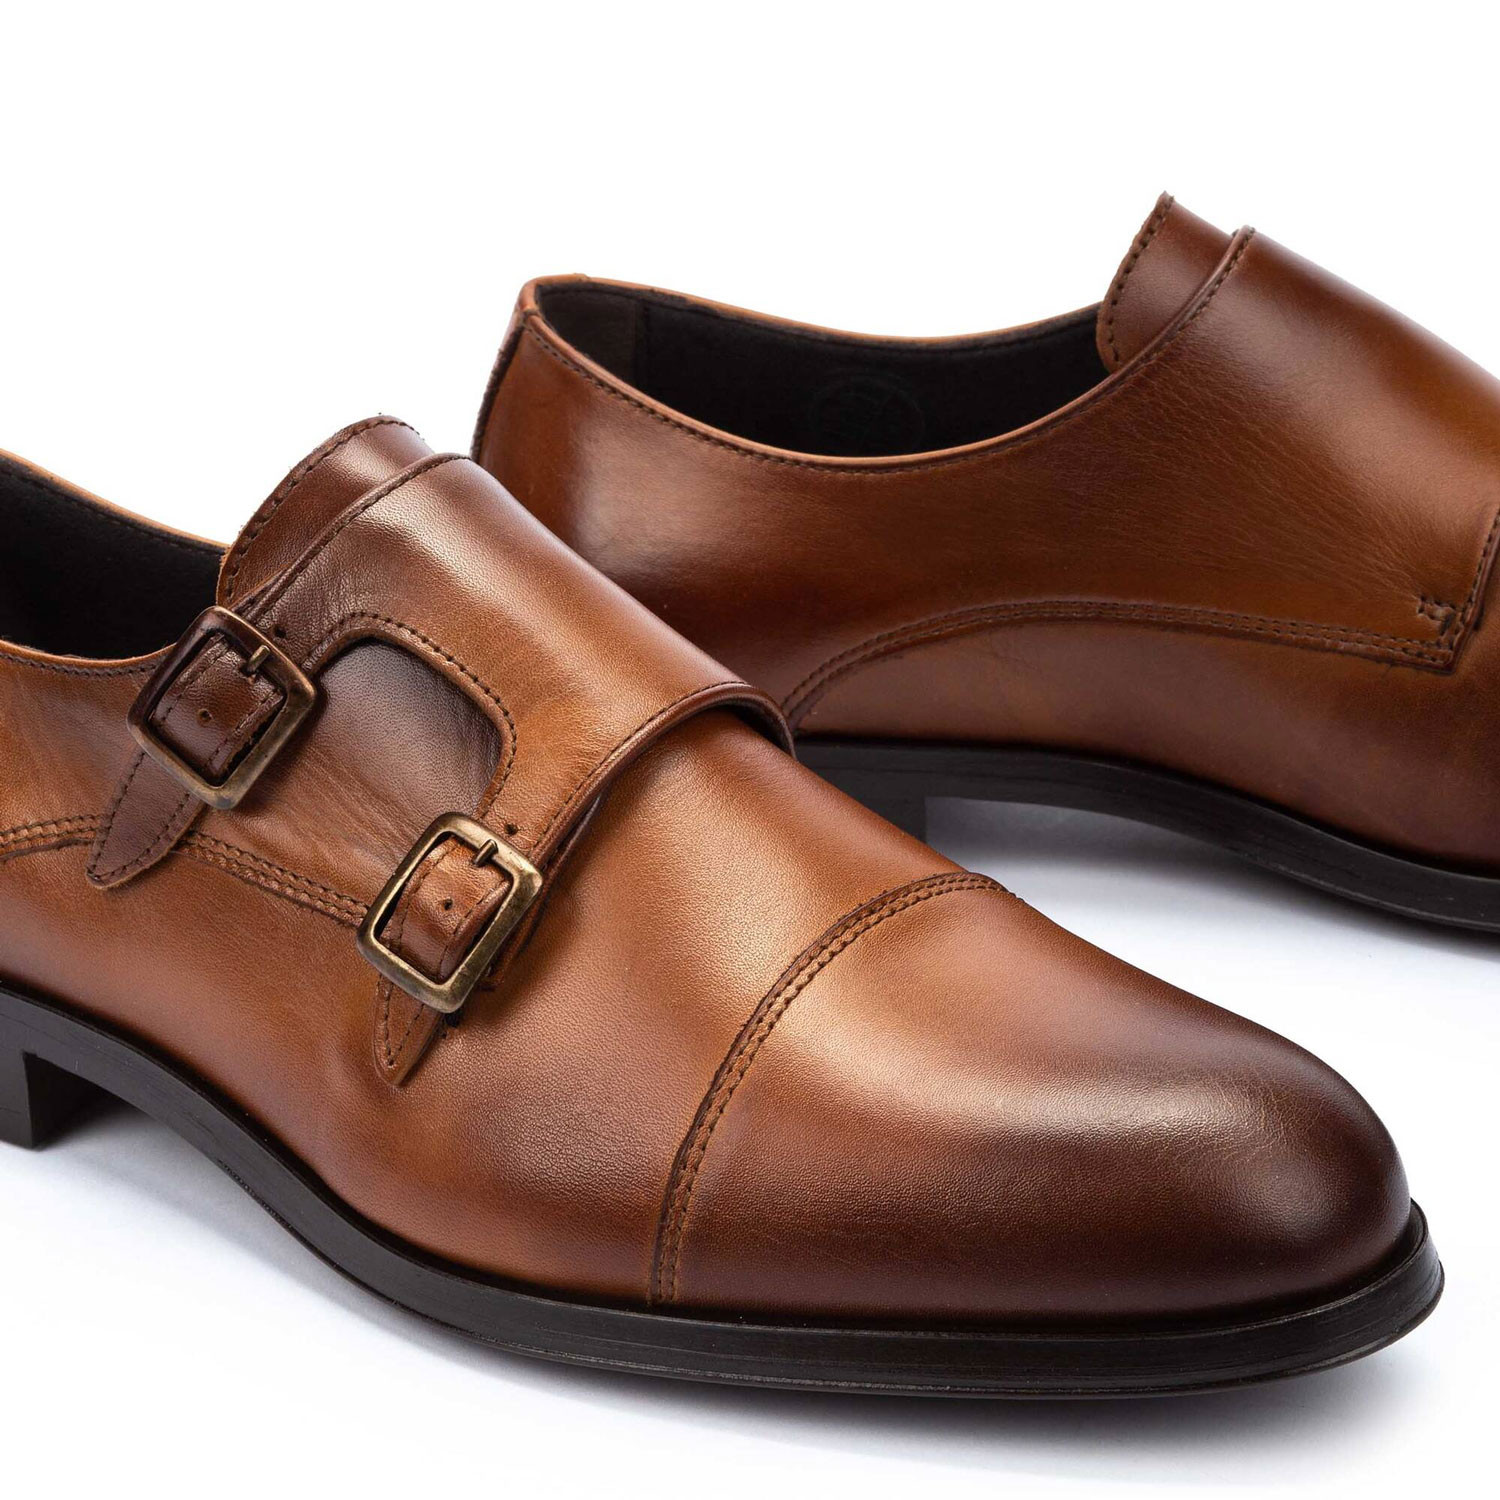 Zapatos de Vestir para Hombres Modernos: ¡Elegancia y estilo garantizado!